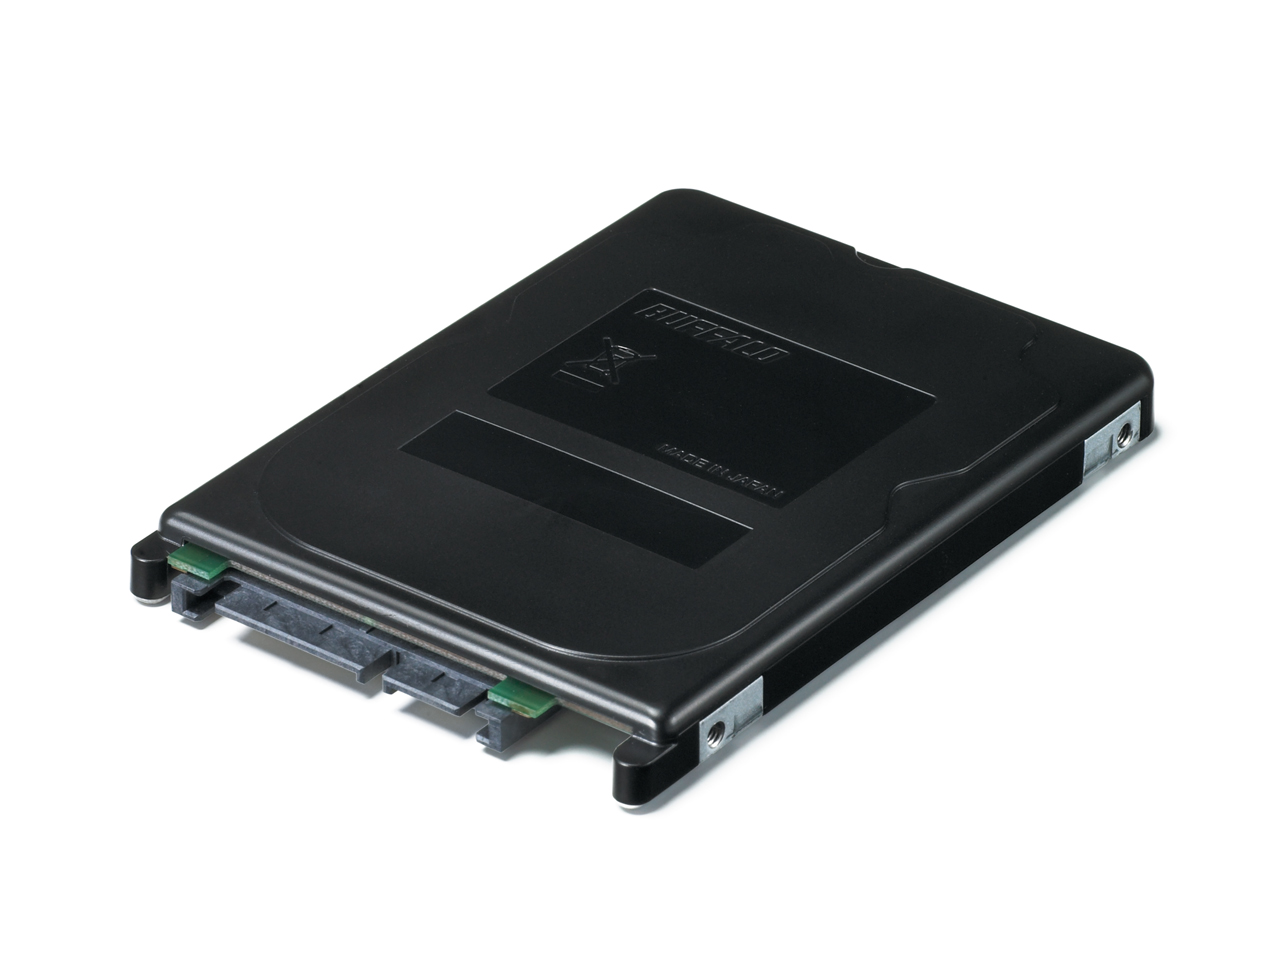 Immagine pubblicata in relazione al seguente contenuto: Buffalo lancia gli SSD SHD-NSUH con porte SATA II e USB 2.0 | Nome immagine: news12167_1.jpg